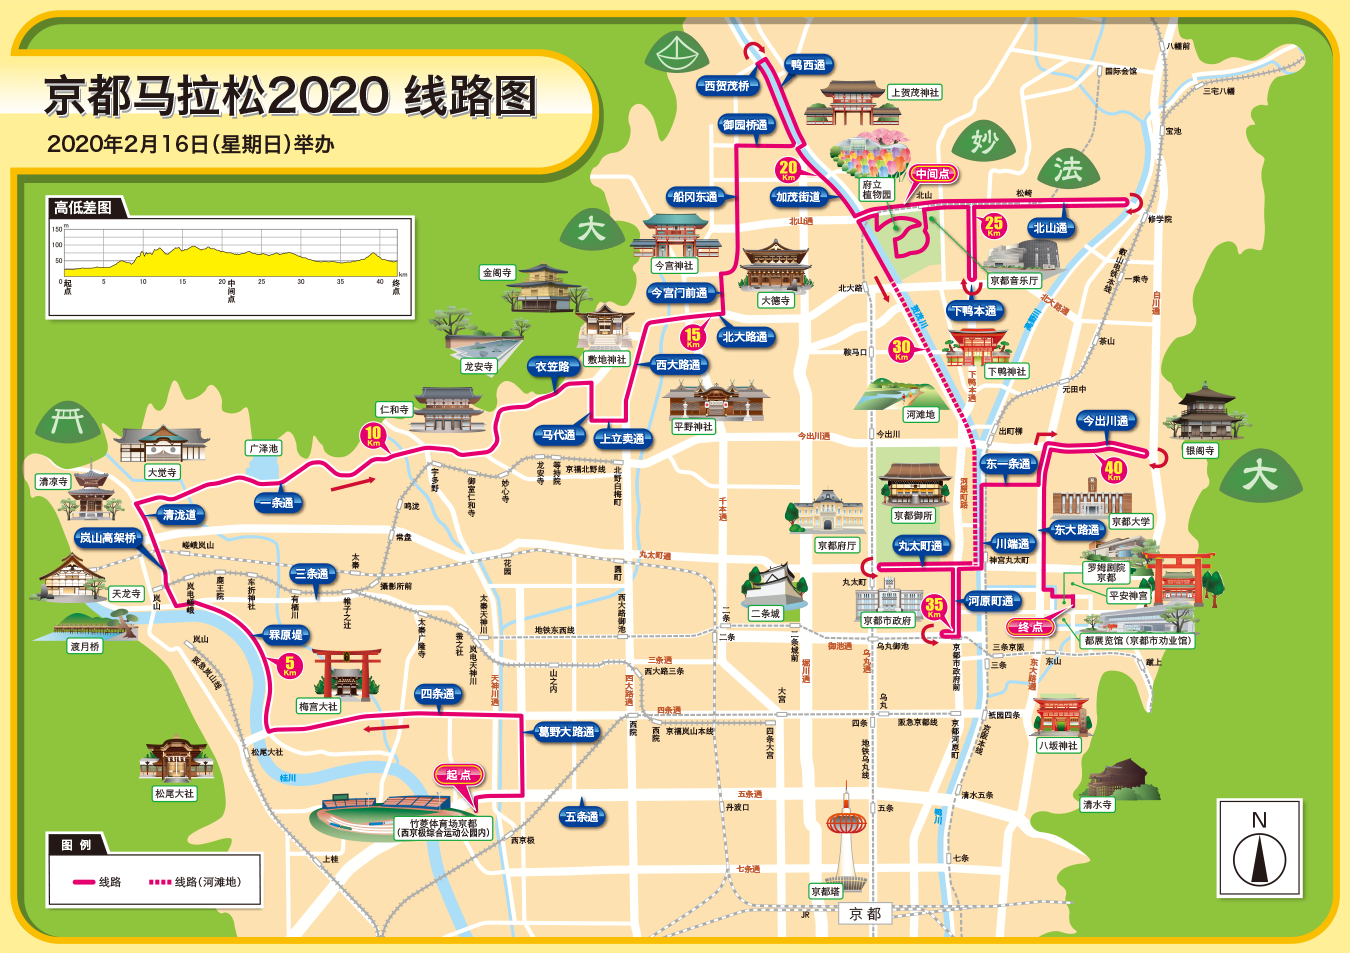 京都马拉松2020 2月16日(星期日)举行